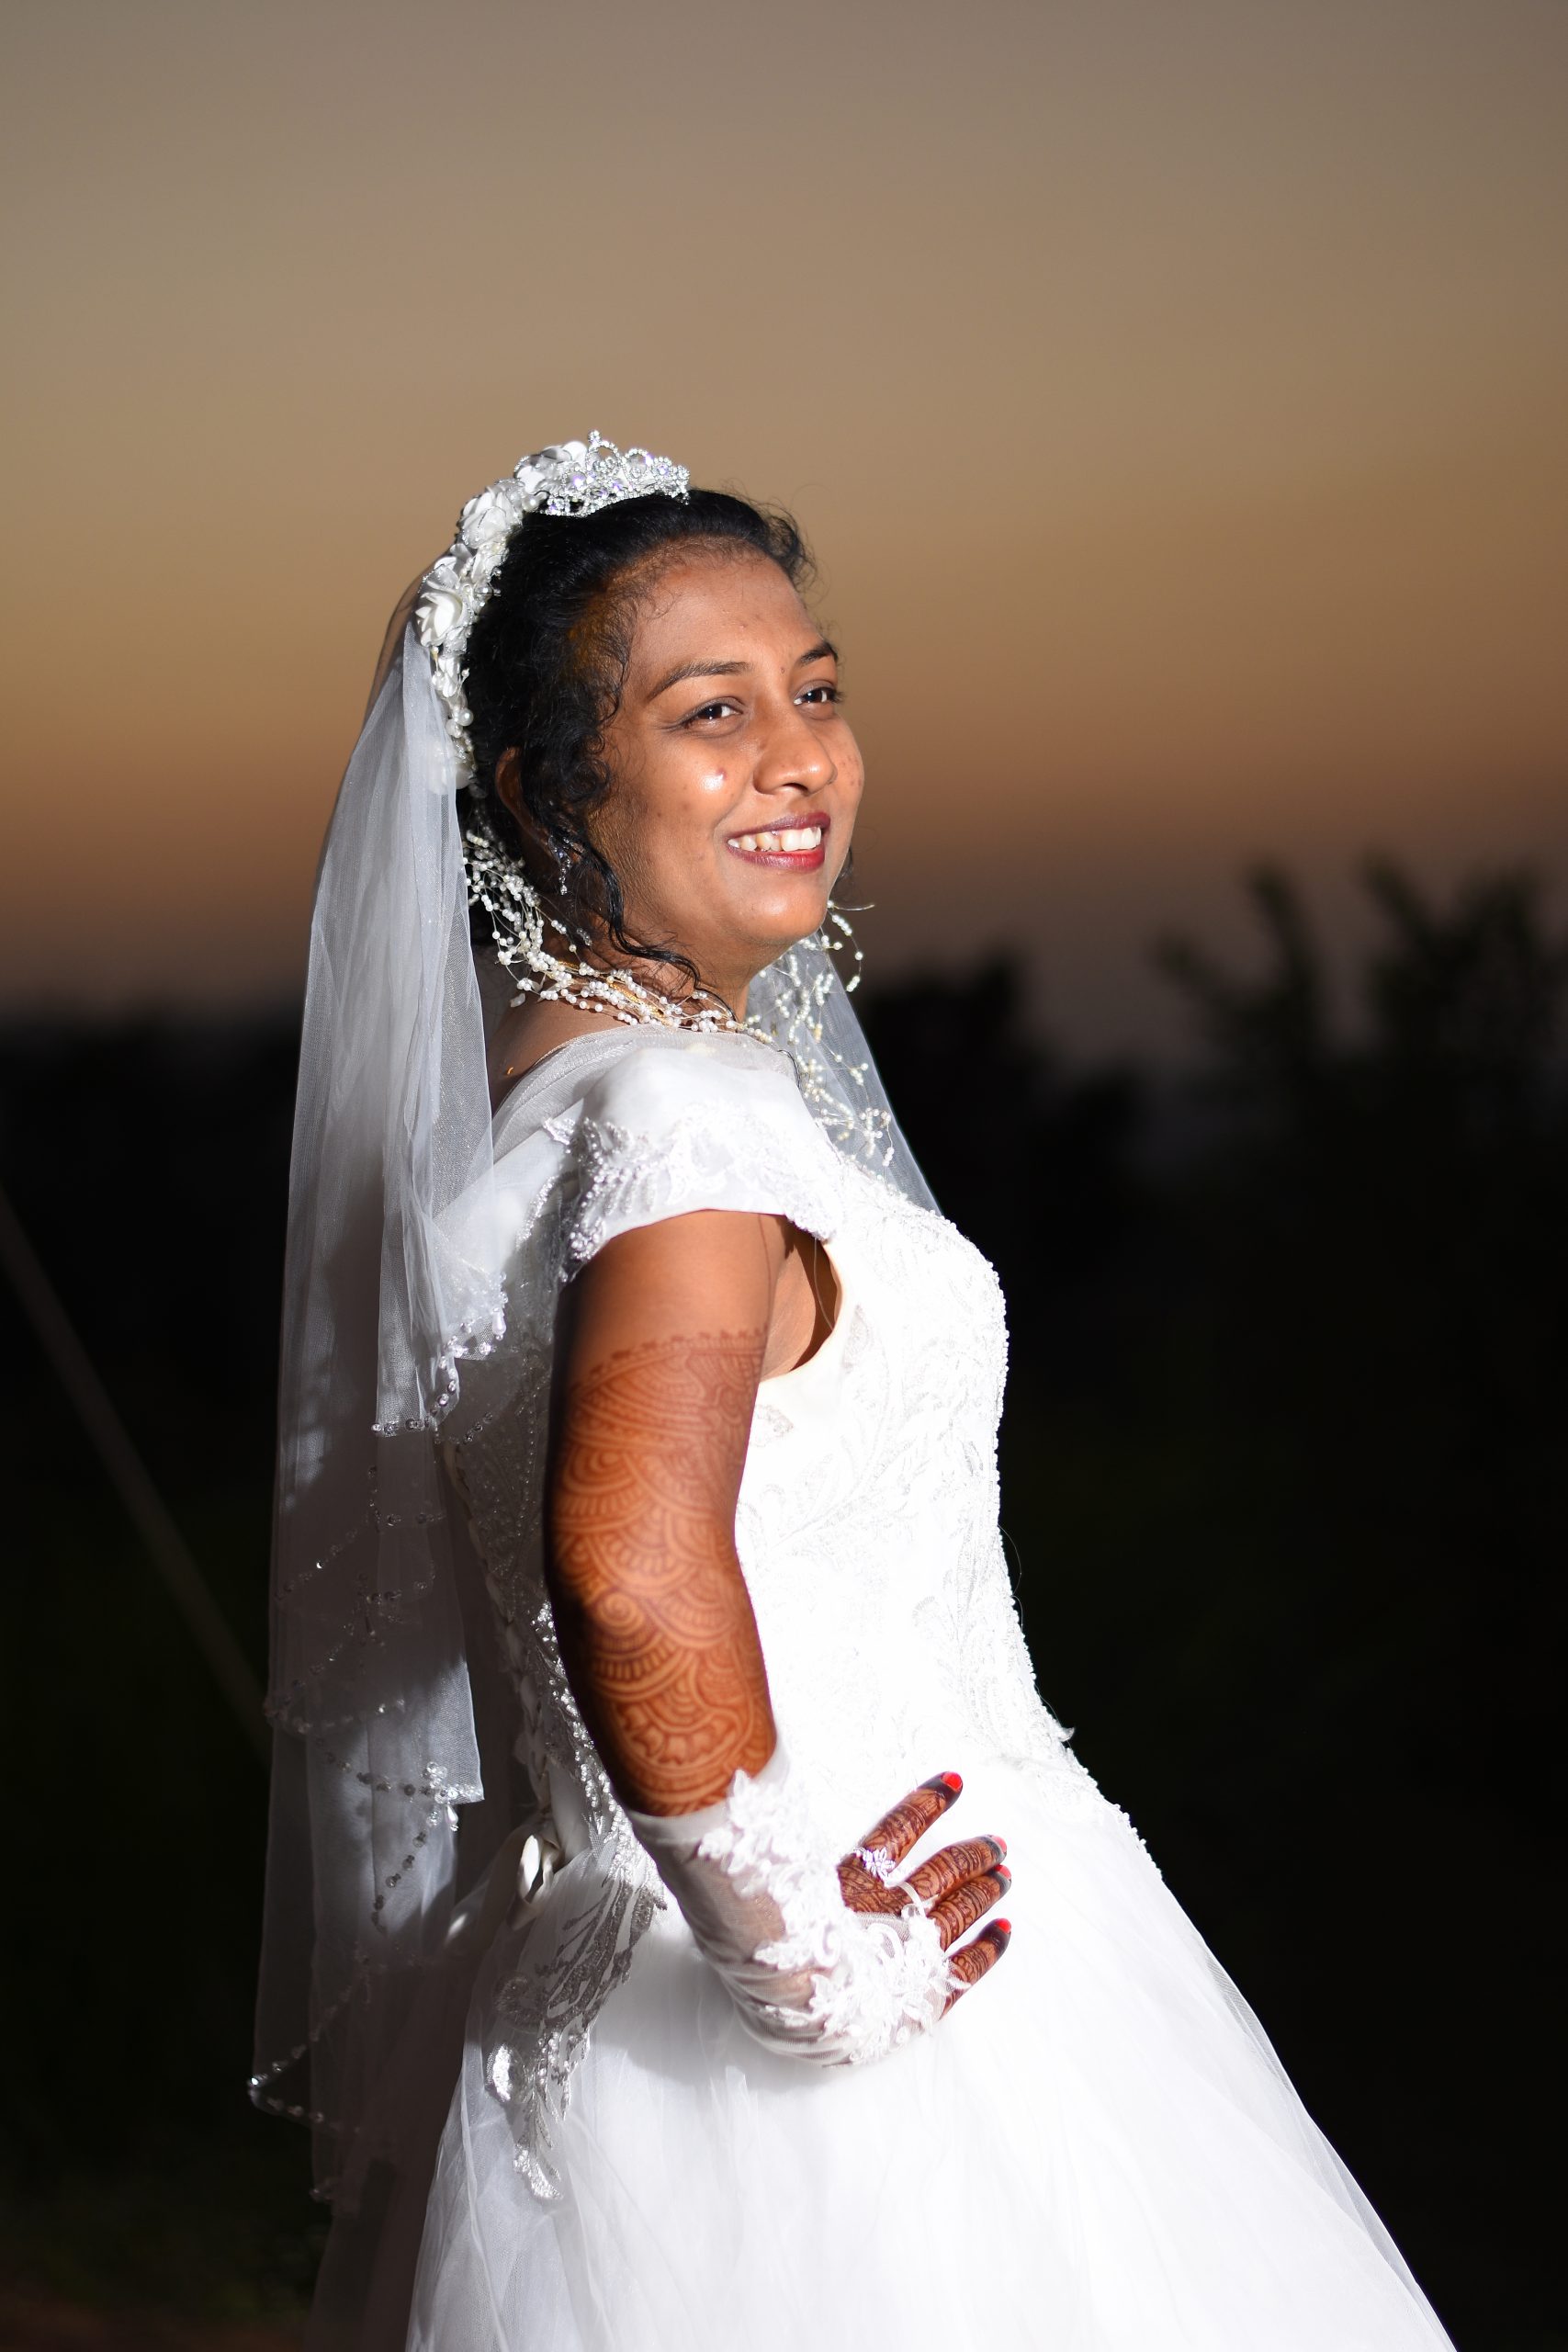 A happy bride